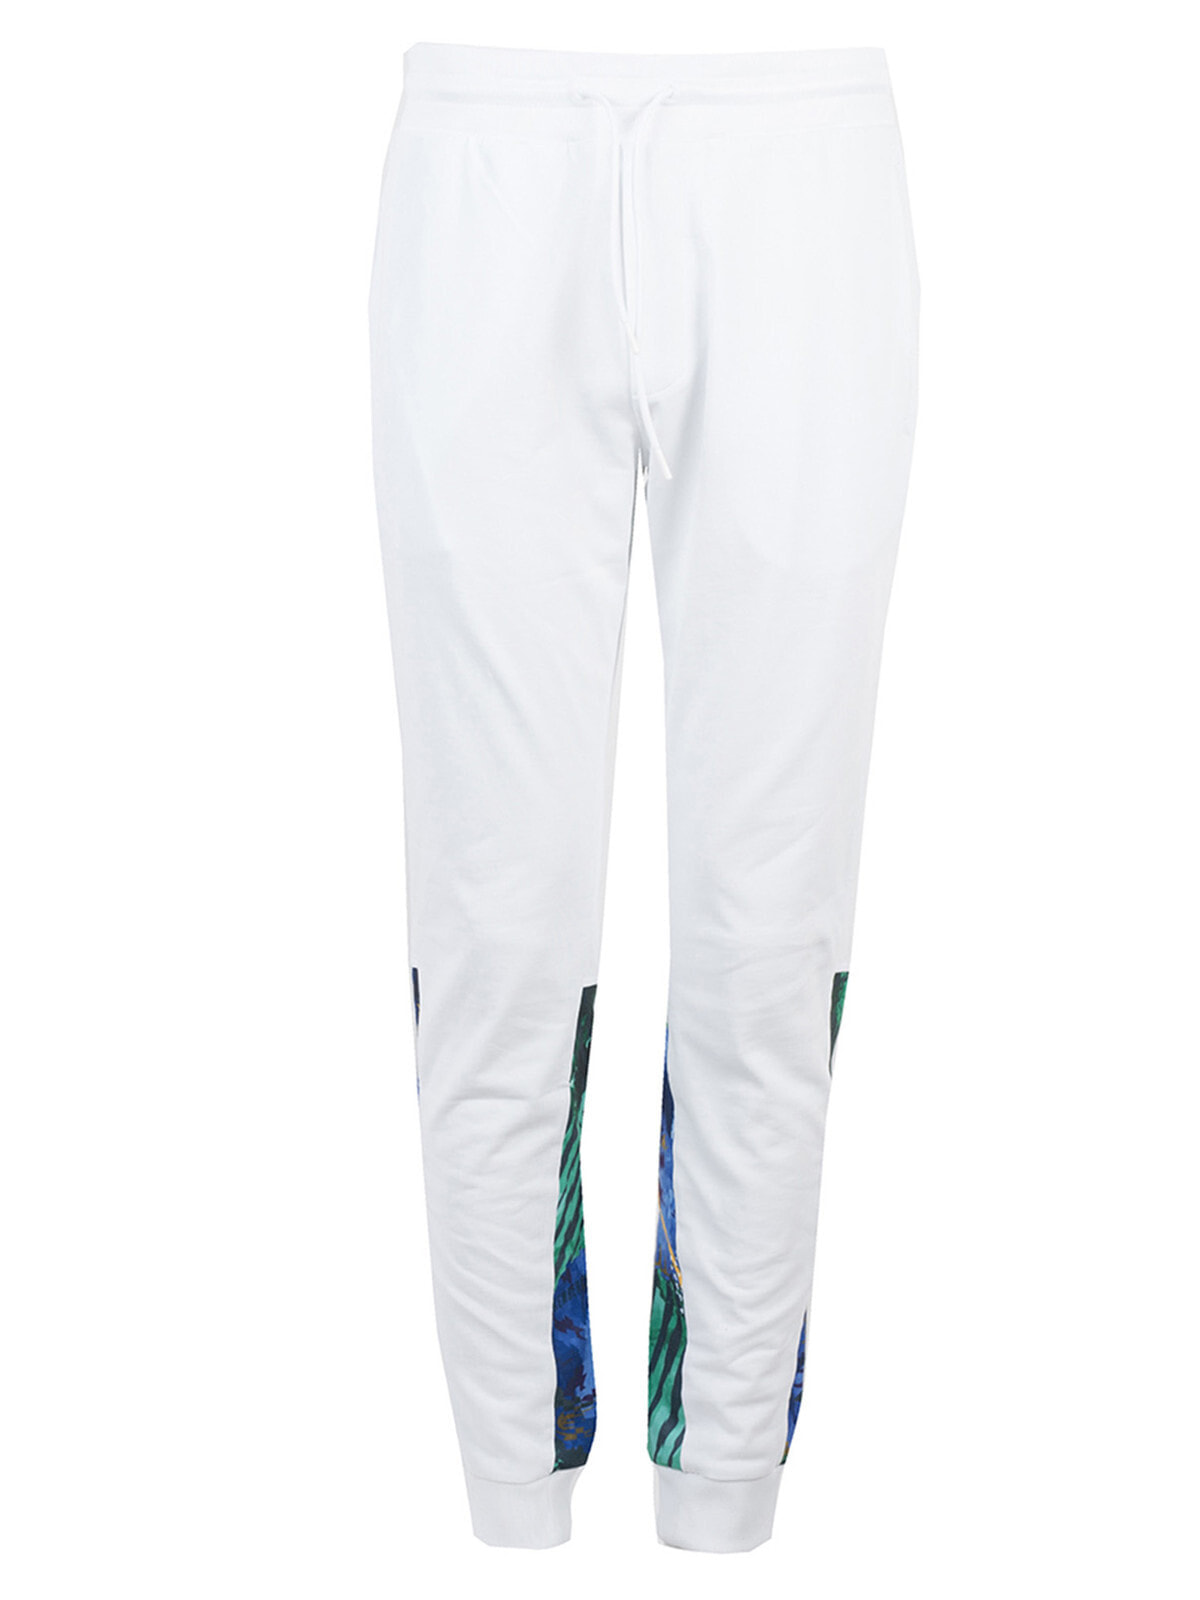 Мужские брюки спортивные белые зауженные летние трикотажные на резинкеджоггеры Bikkembergs Spodnie размер L — купить недорого с доставкой, 48713